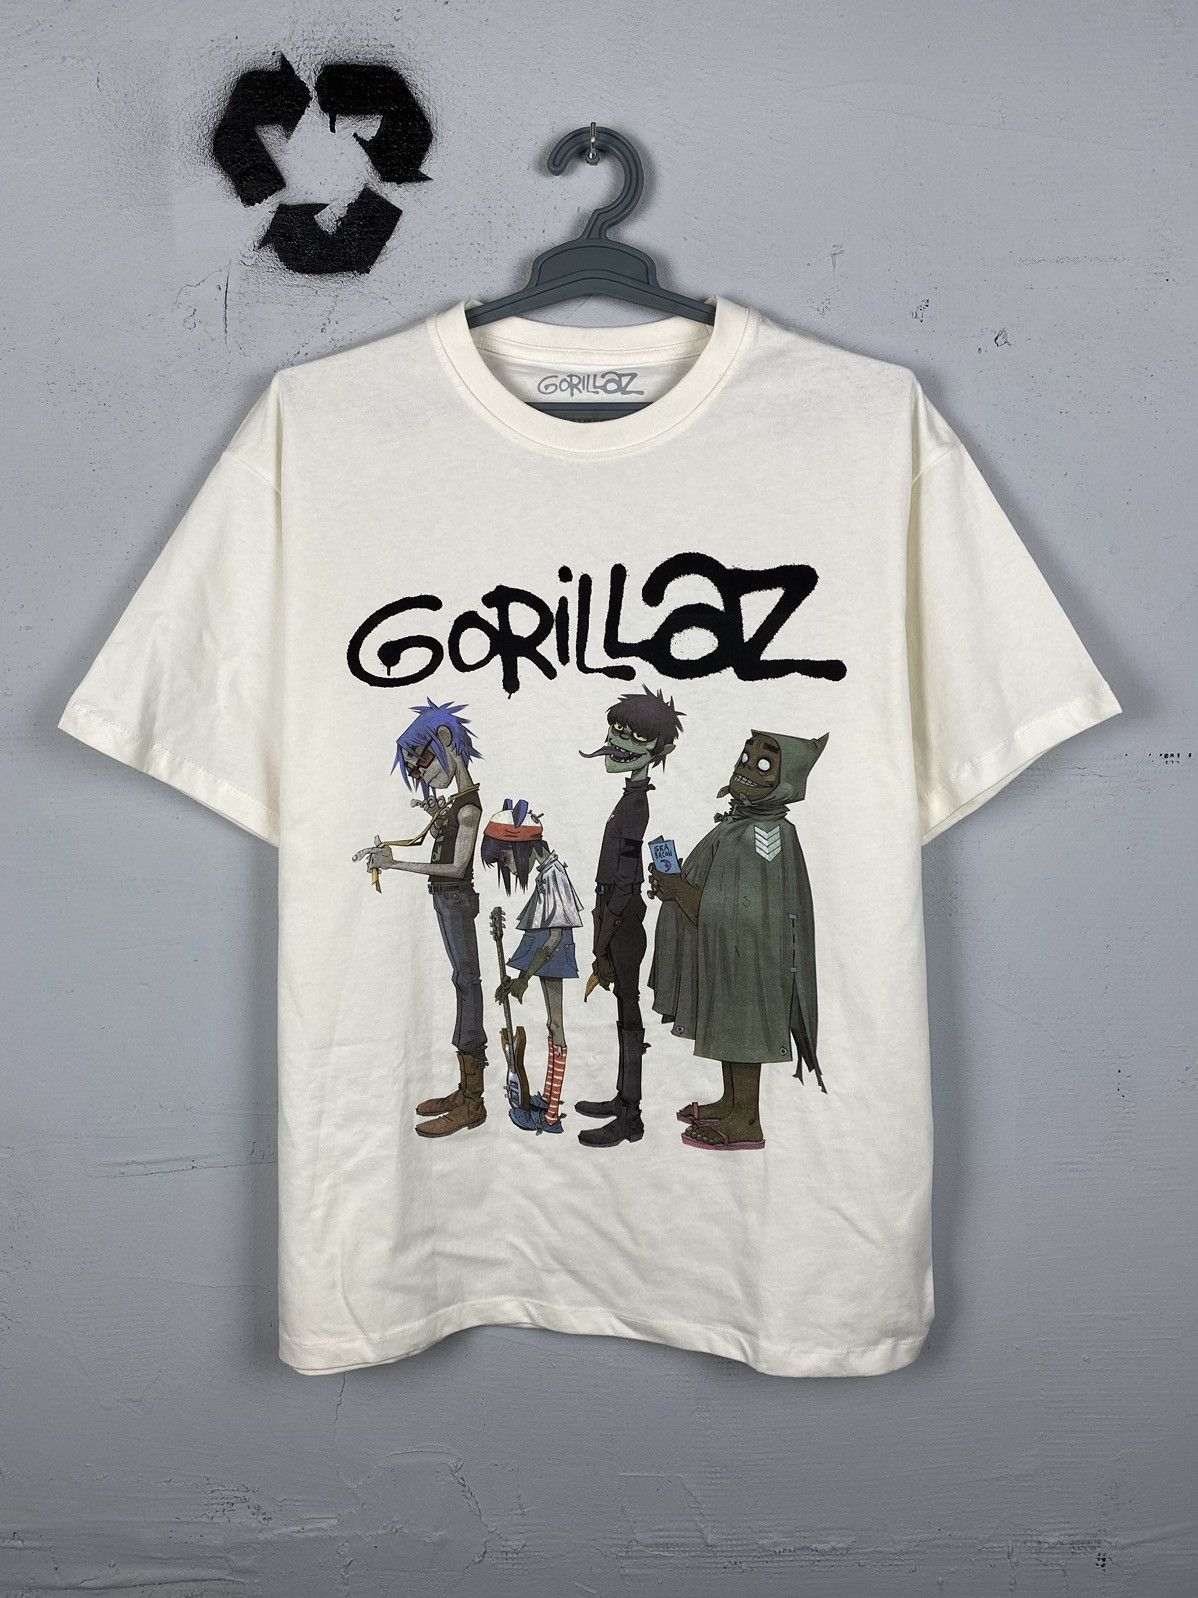 Pre-owned Band Tees X Rap Tees Gorillaz Vintage Y2k T Shirt Like Oasis Britpop Radiohead In White